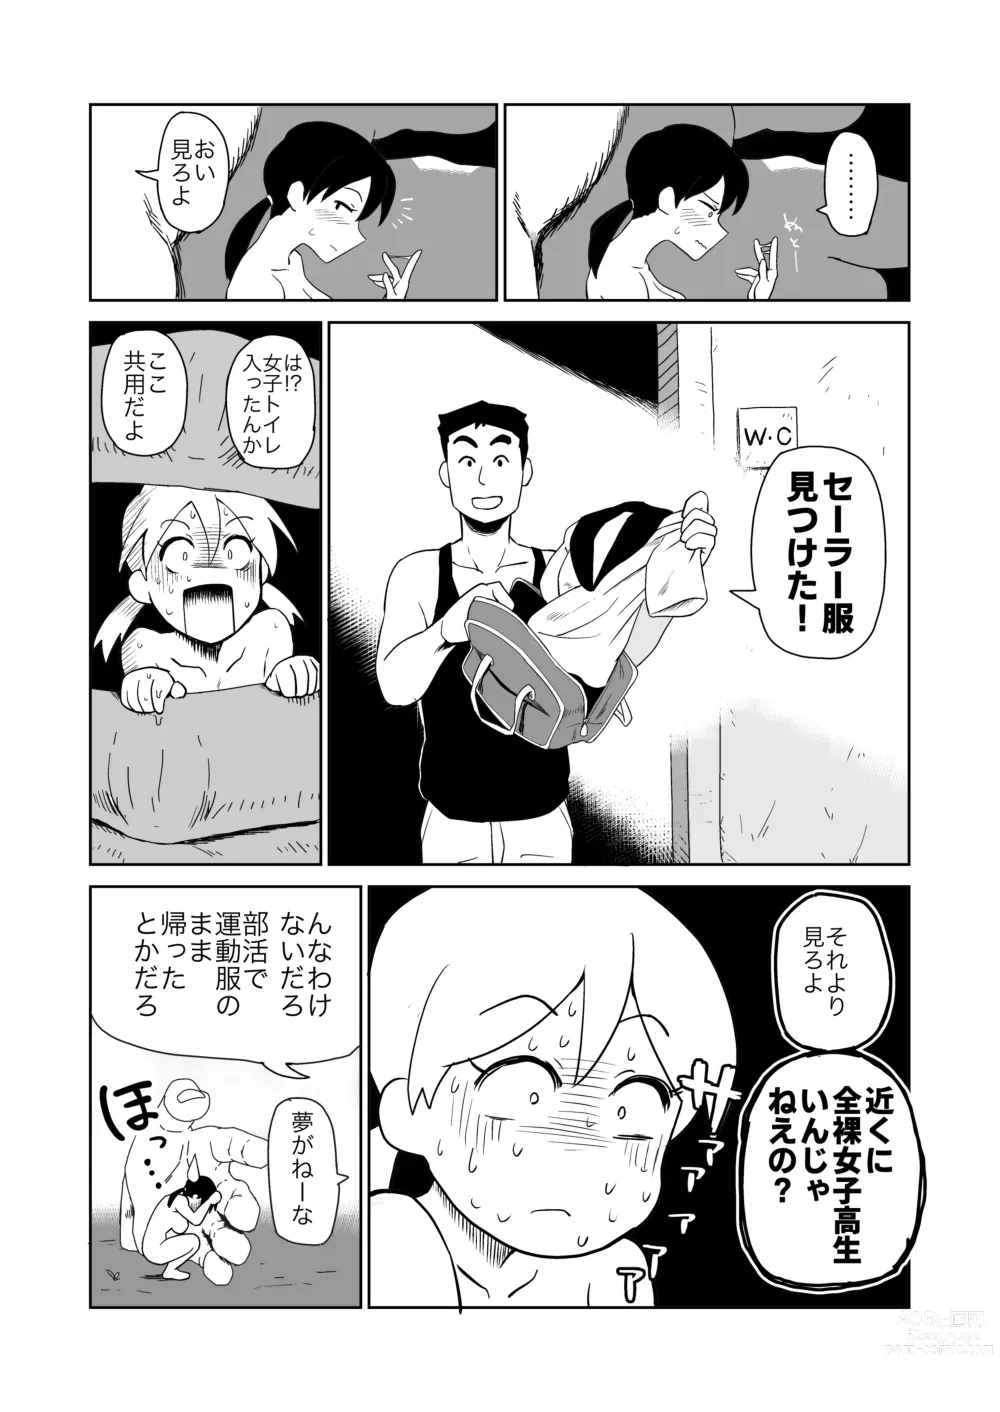 Page 13 of doujinshi Yoru,  Kouen, Roshutsu Jii.